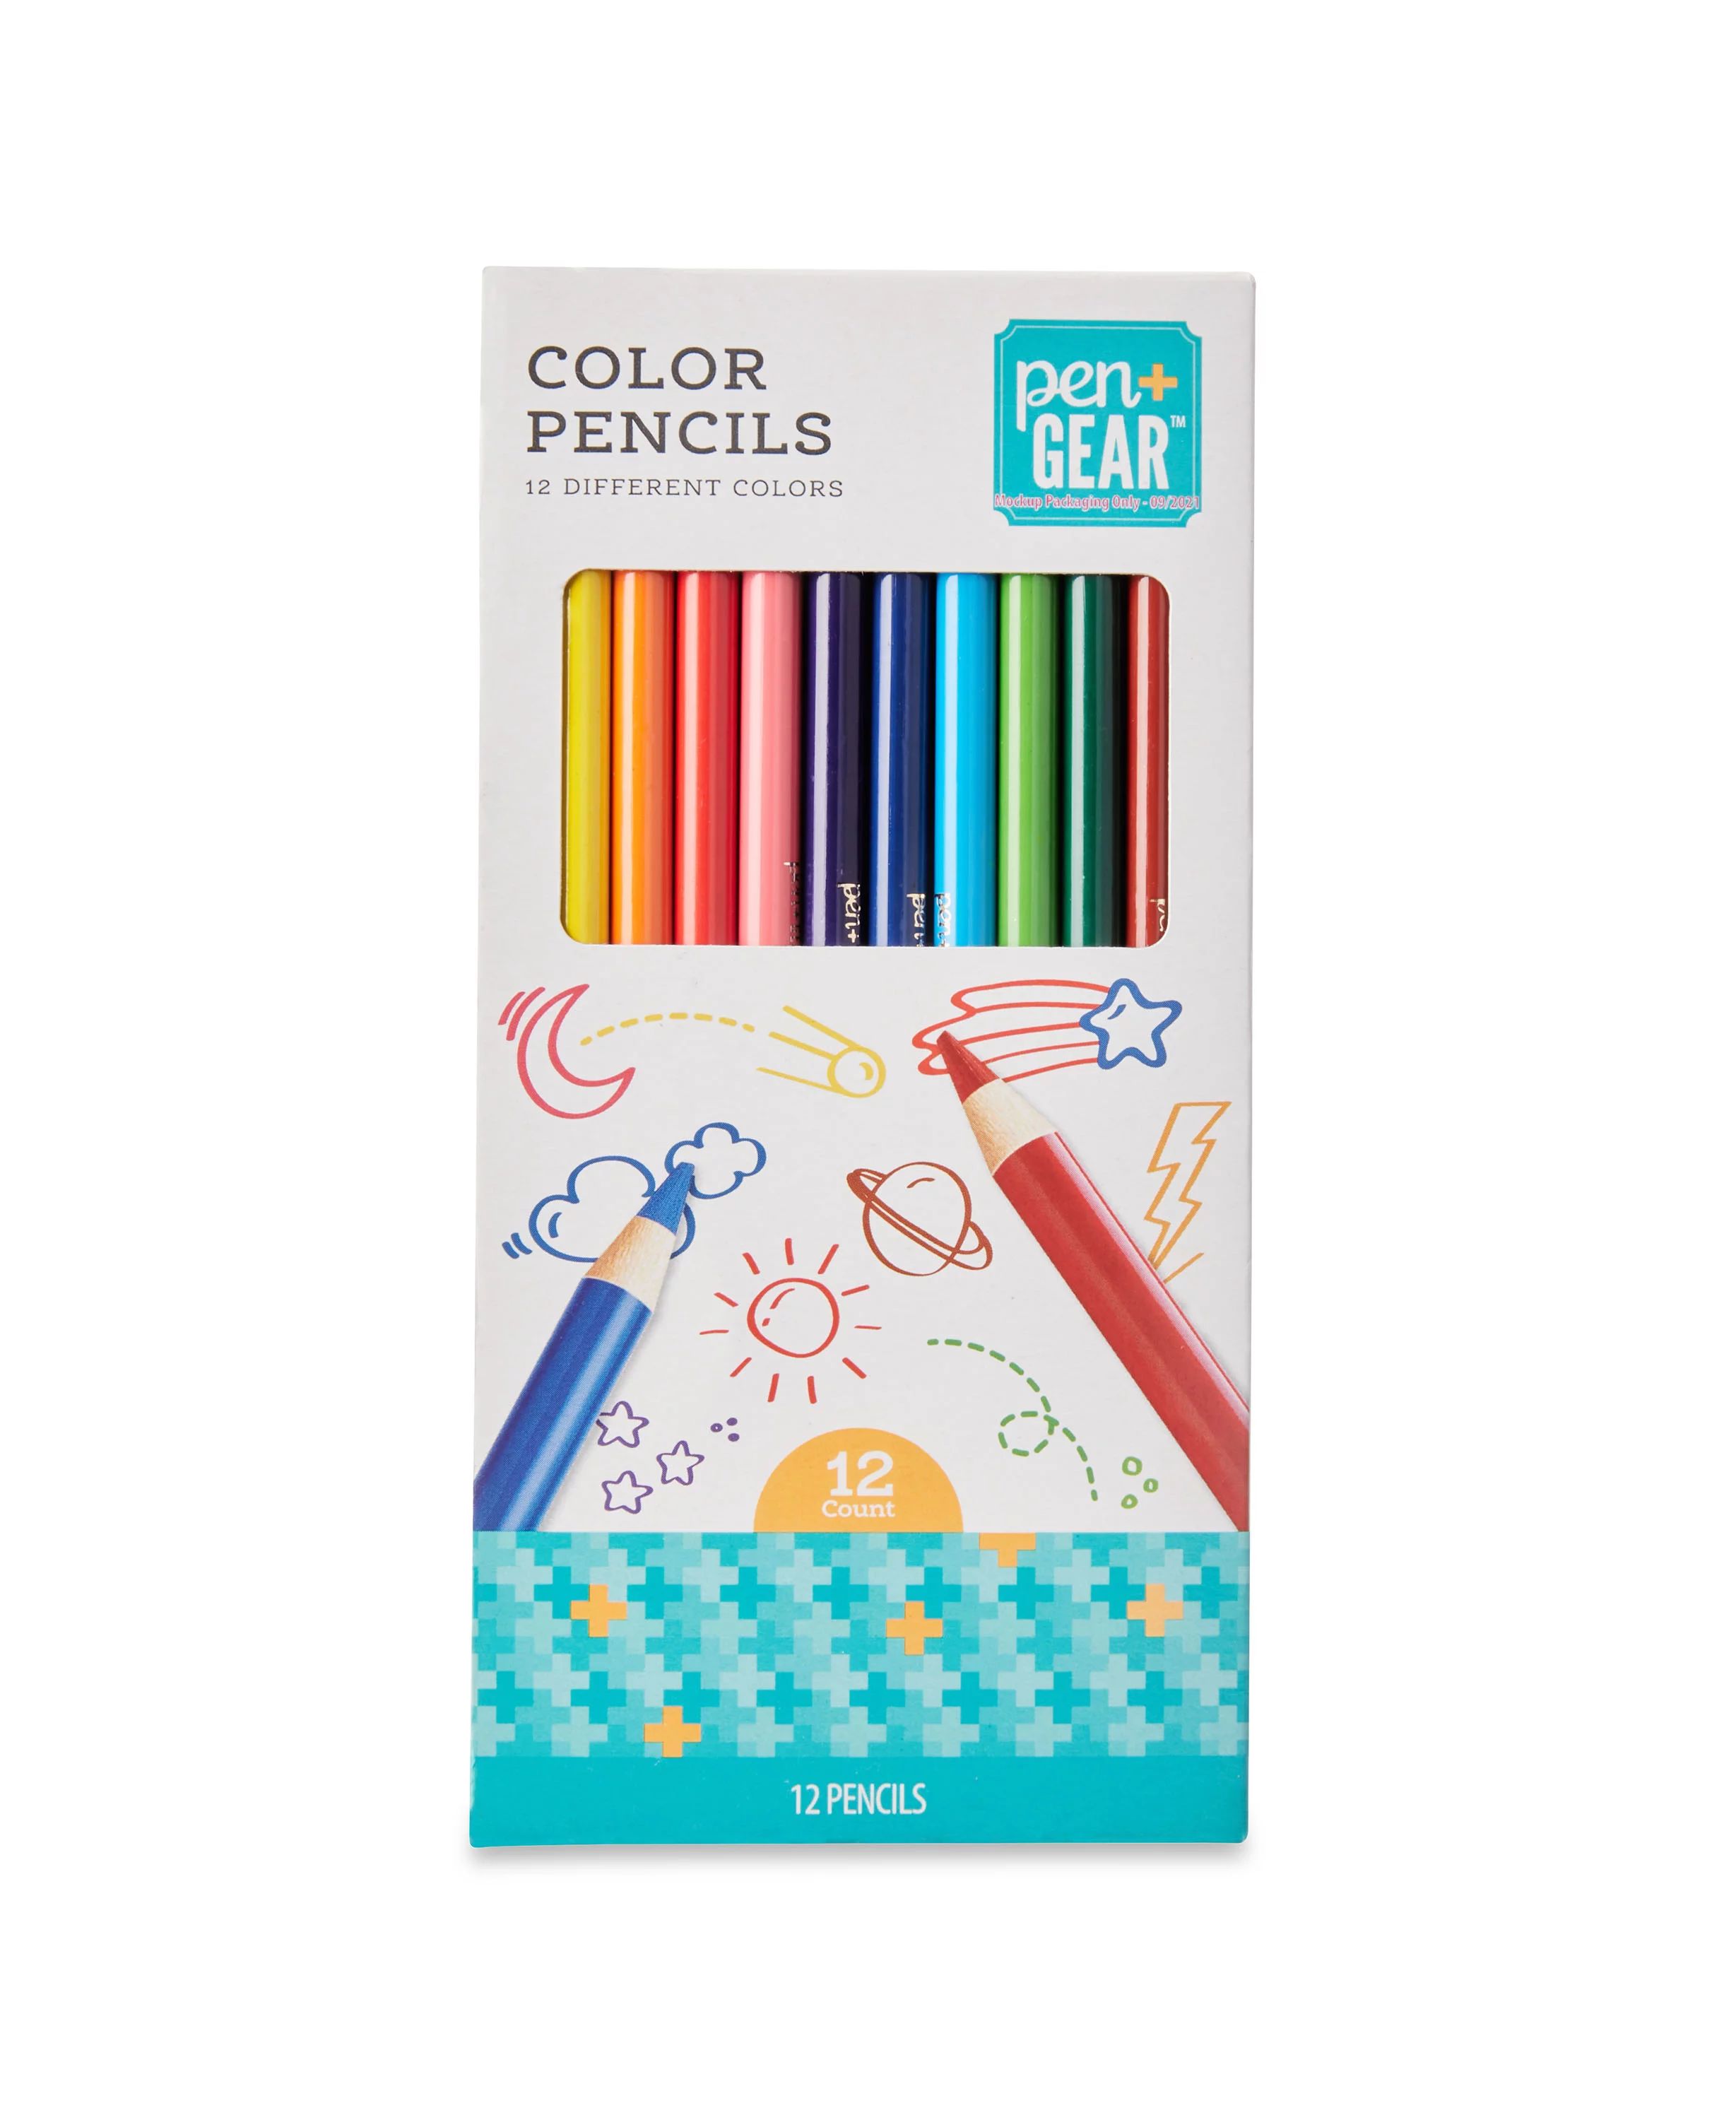 Pen + Gear Classic Colored Pencils, 12 Count, Assorted Colors | Walmart (US)